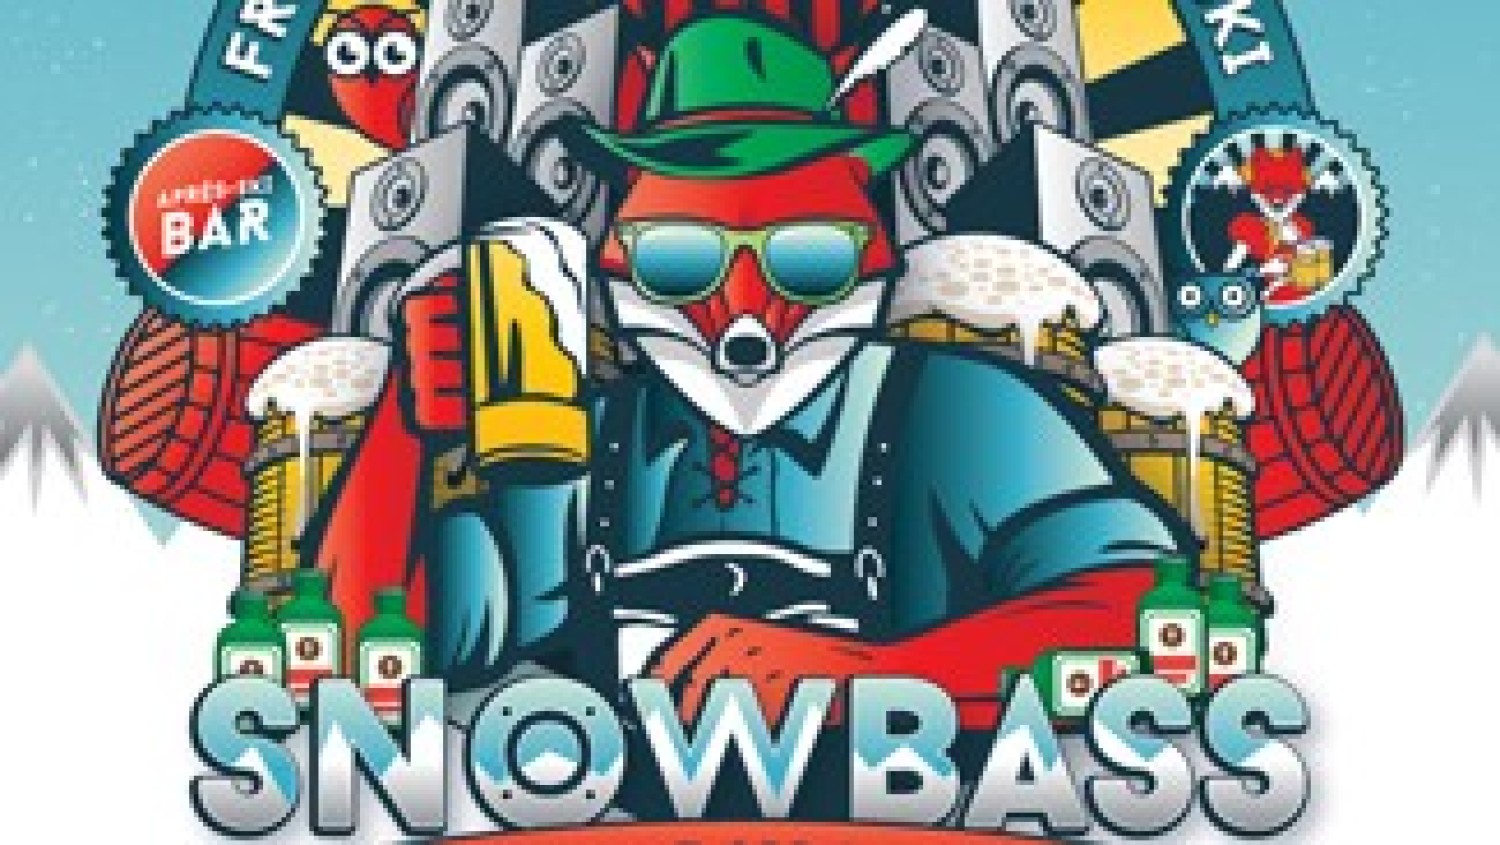 Party nieuws: Snowbass Festival is terug op zaterdag 16 februari 2019!